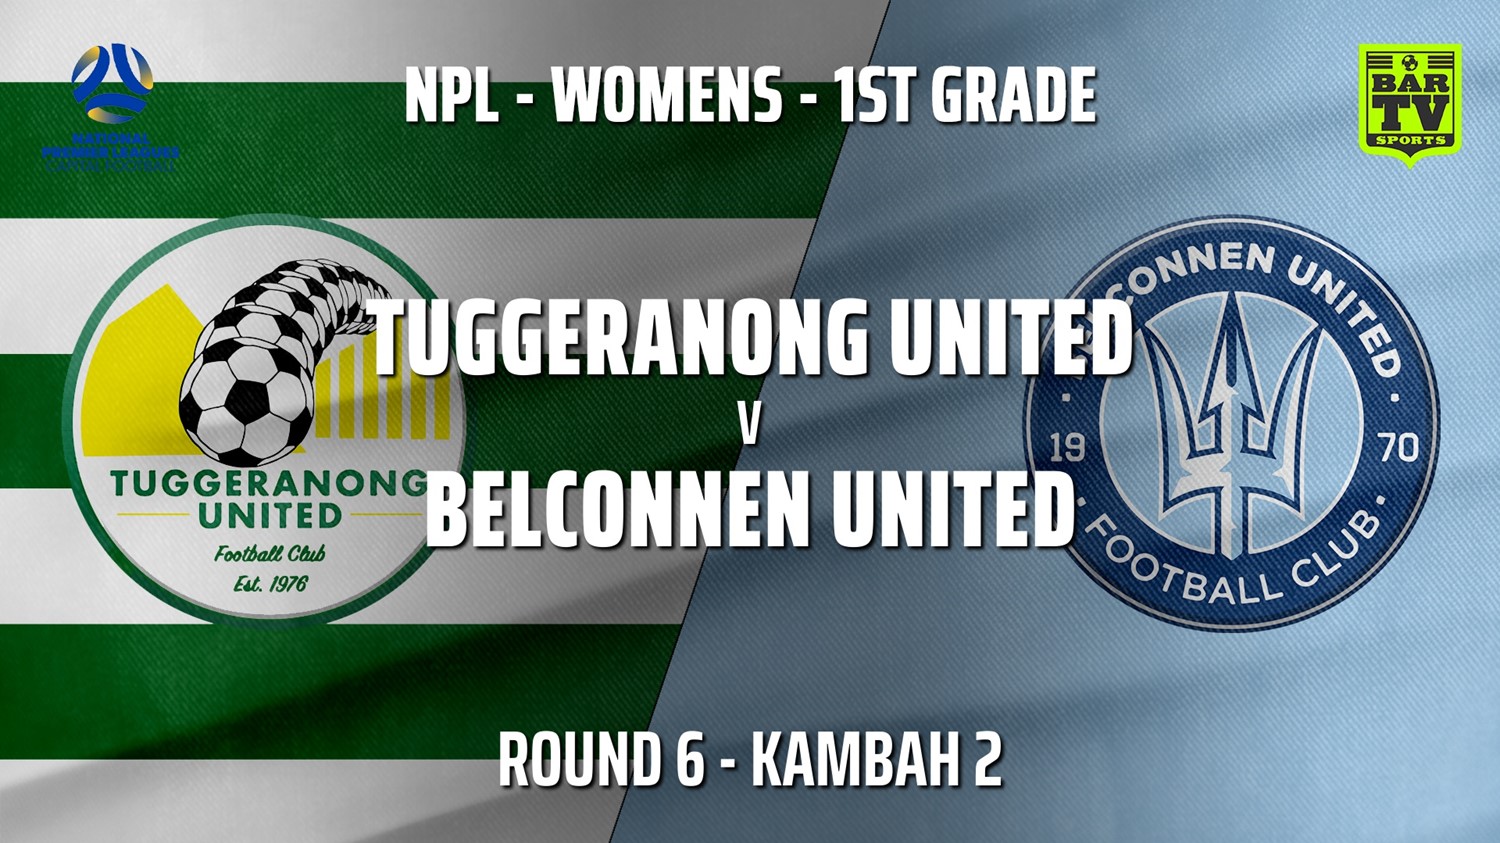 210516-NPLW - Capital Round 6 - Tuggeranong United FC (women) v Belconnen United (women) Slate Image